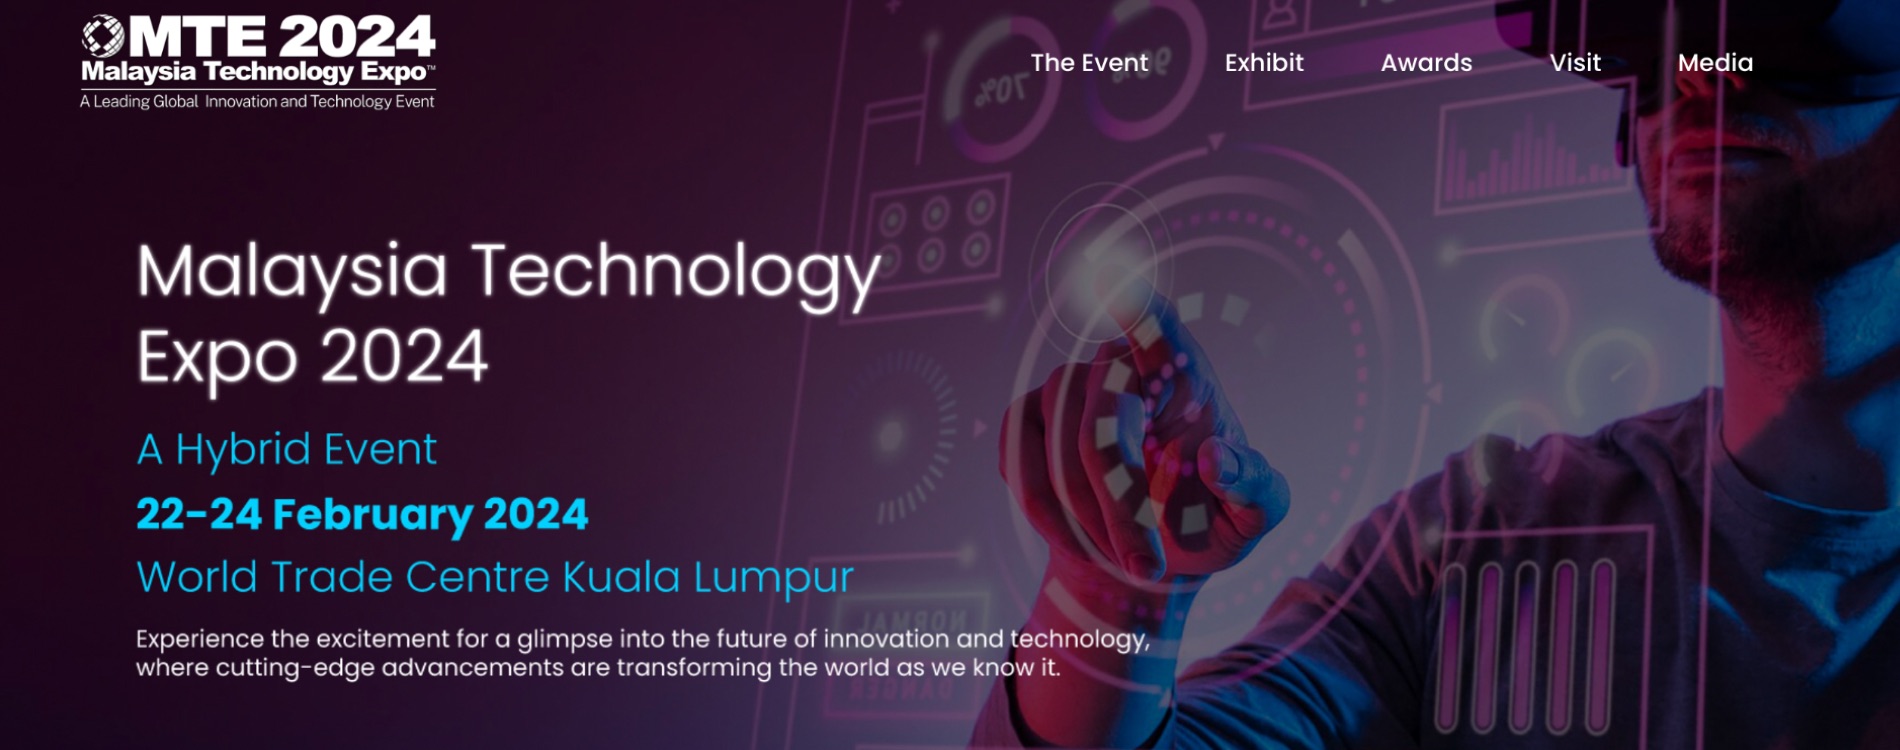 Malaysia Technology Expo 2024